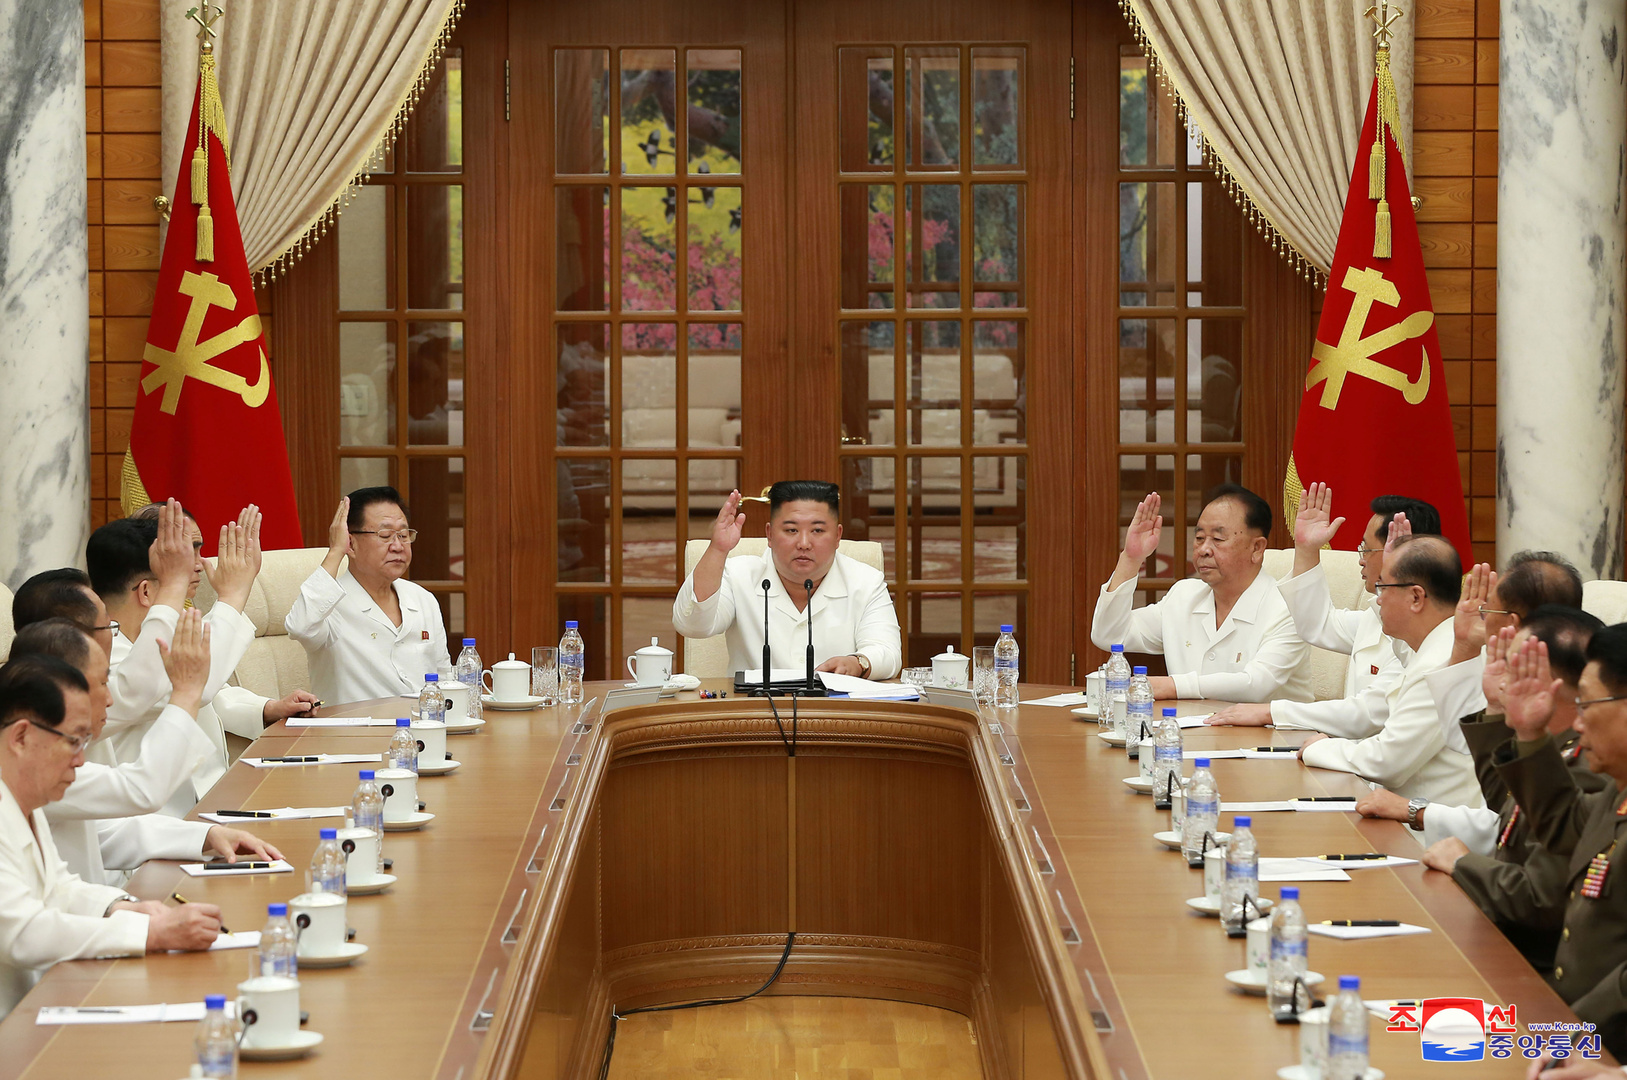 زعيم كوريا الشمالية يظهر بعد إشاعة 